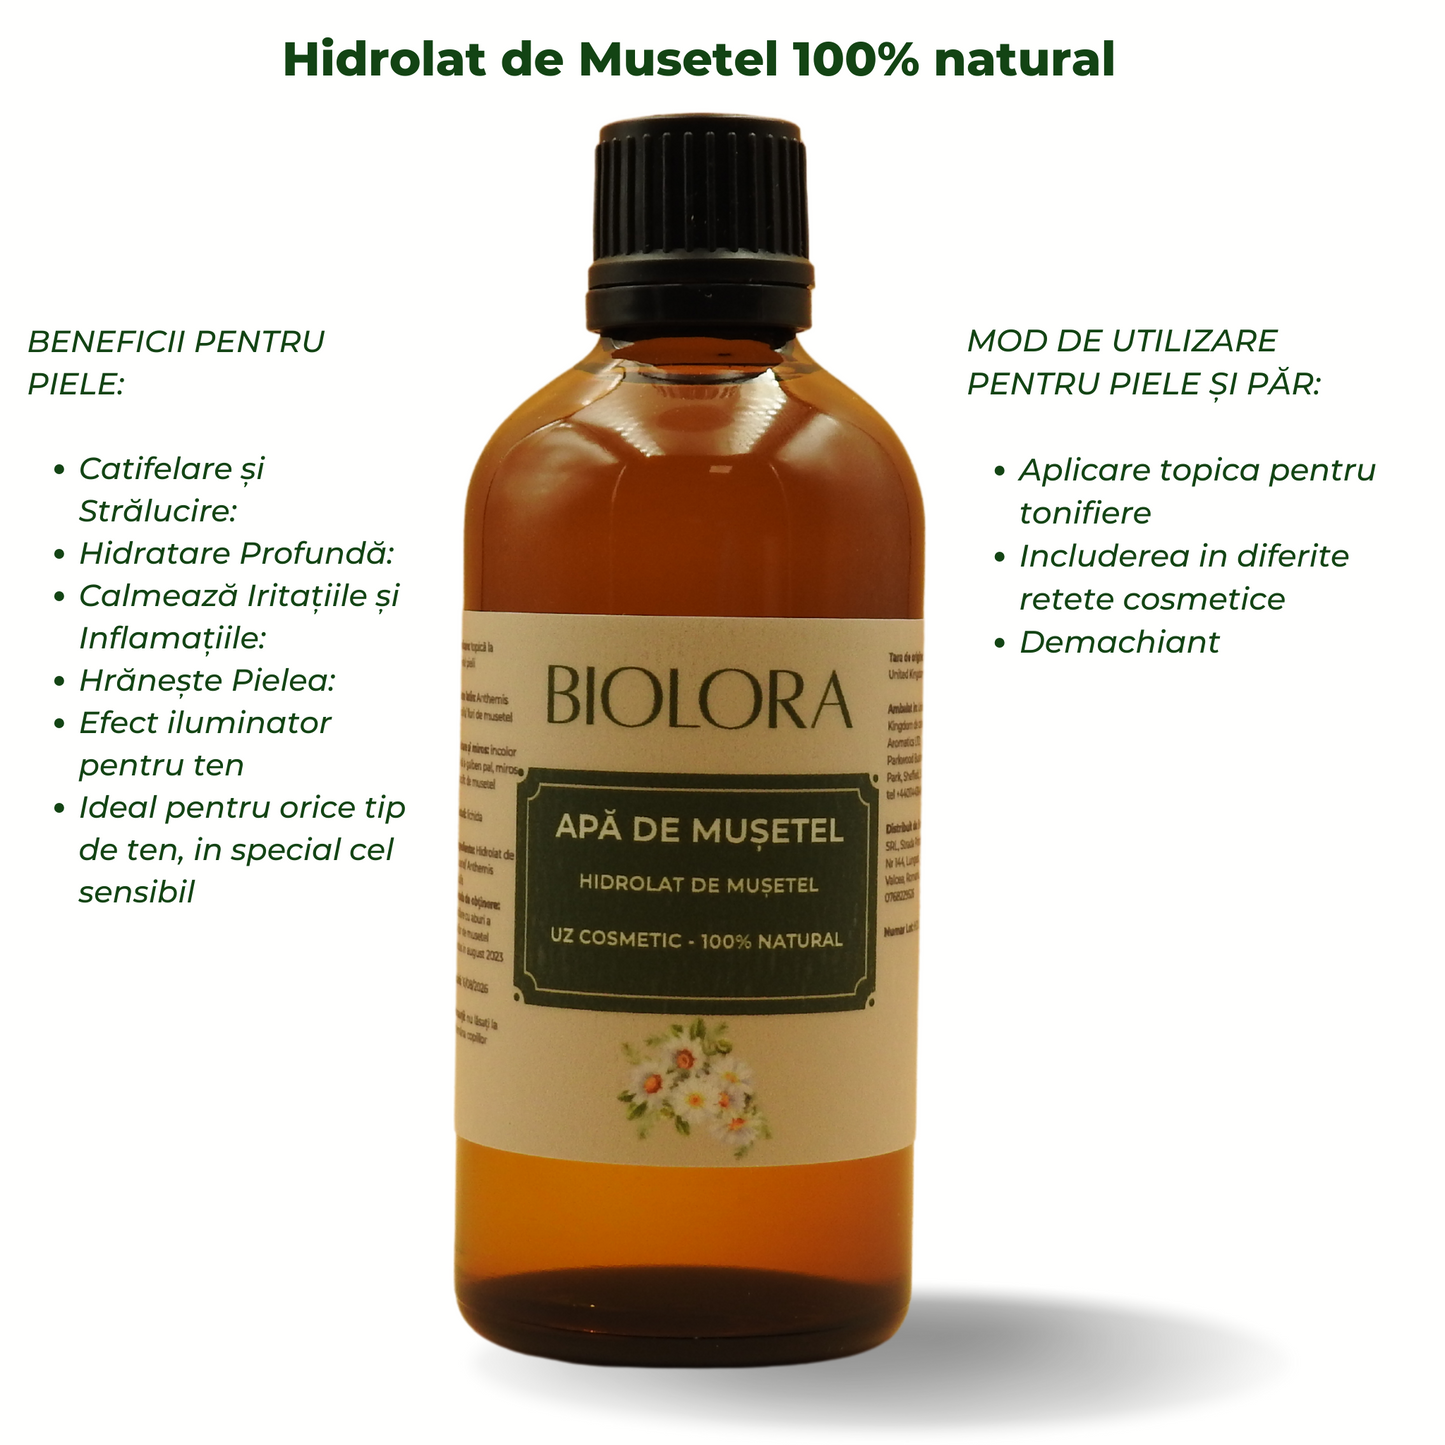 Apa de Musetel/ Hidrolat de Musetel Biolora, 100% natural, uz cosmetic, pentru ingrijirea pielii si a parului, 100 ml